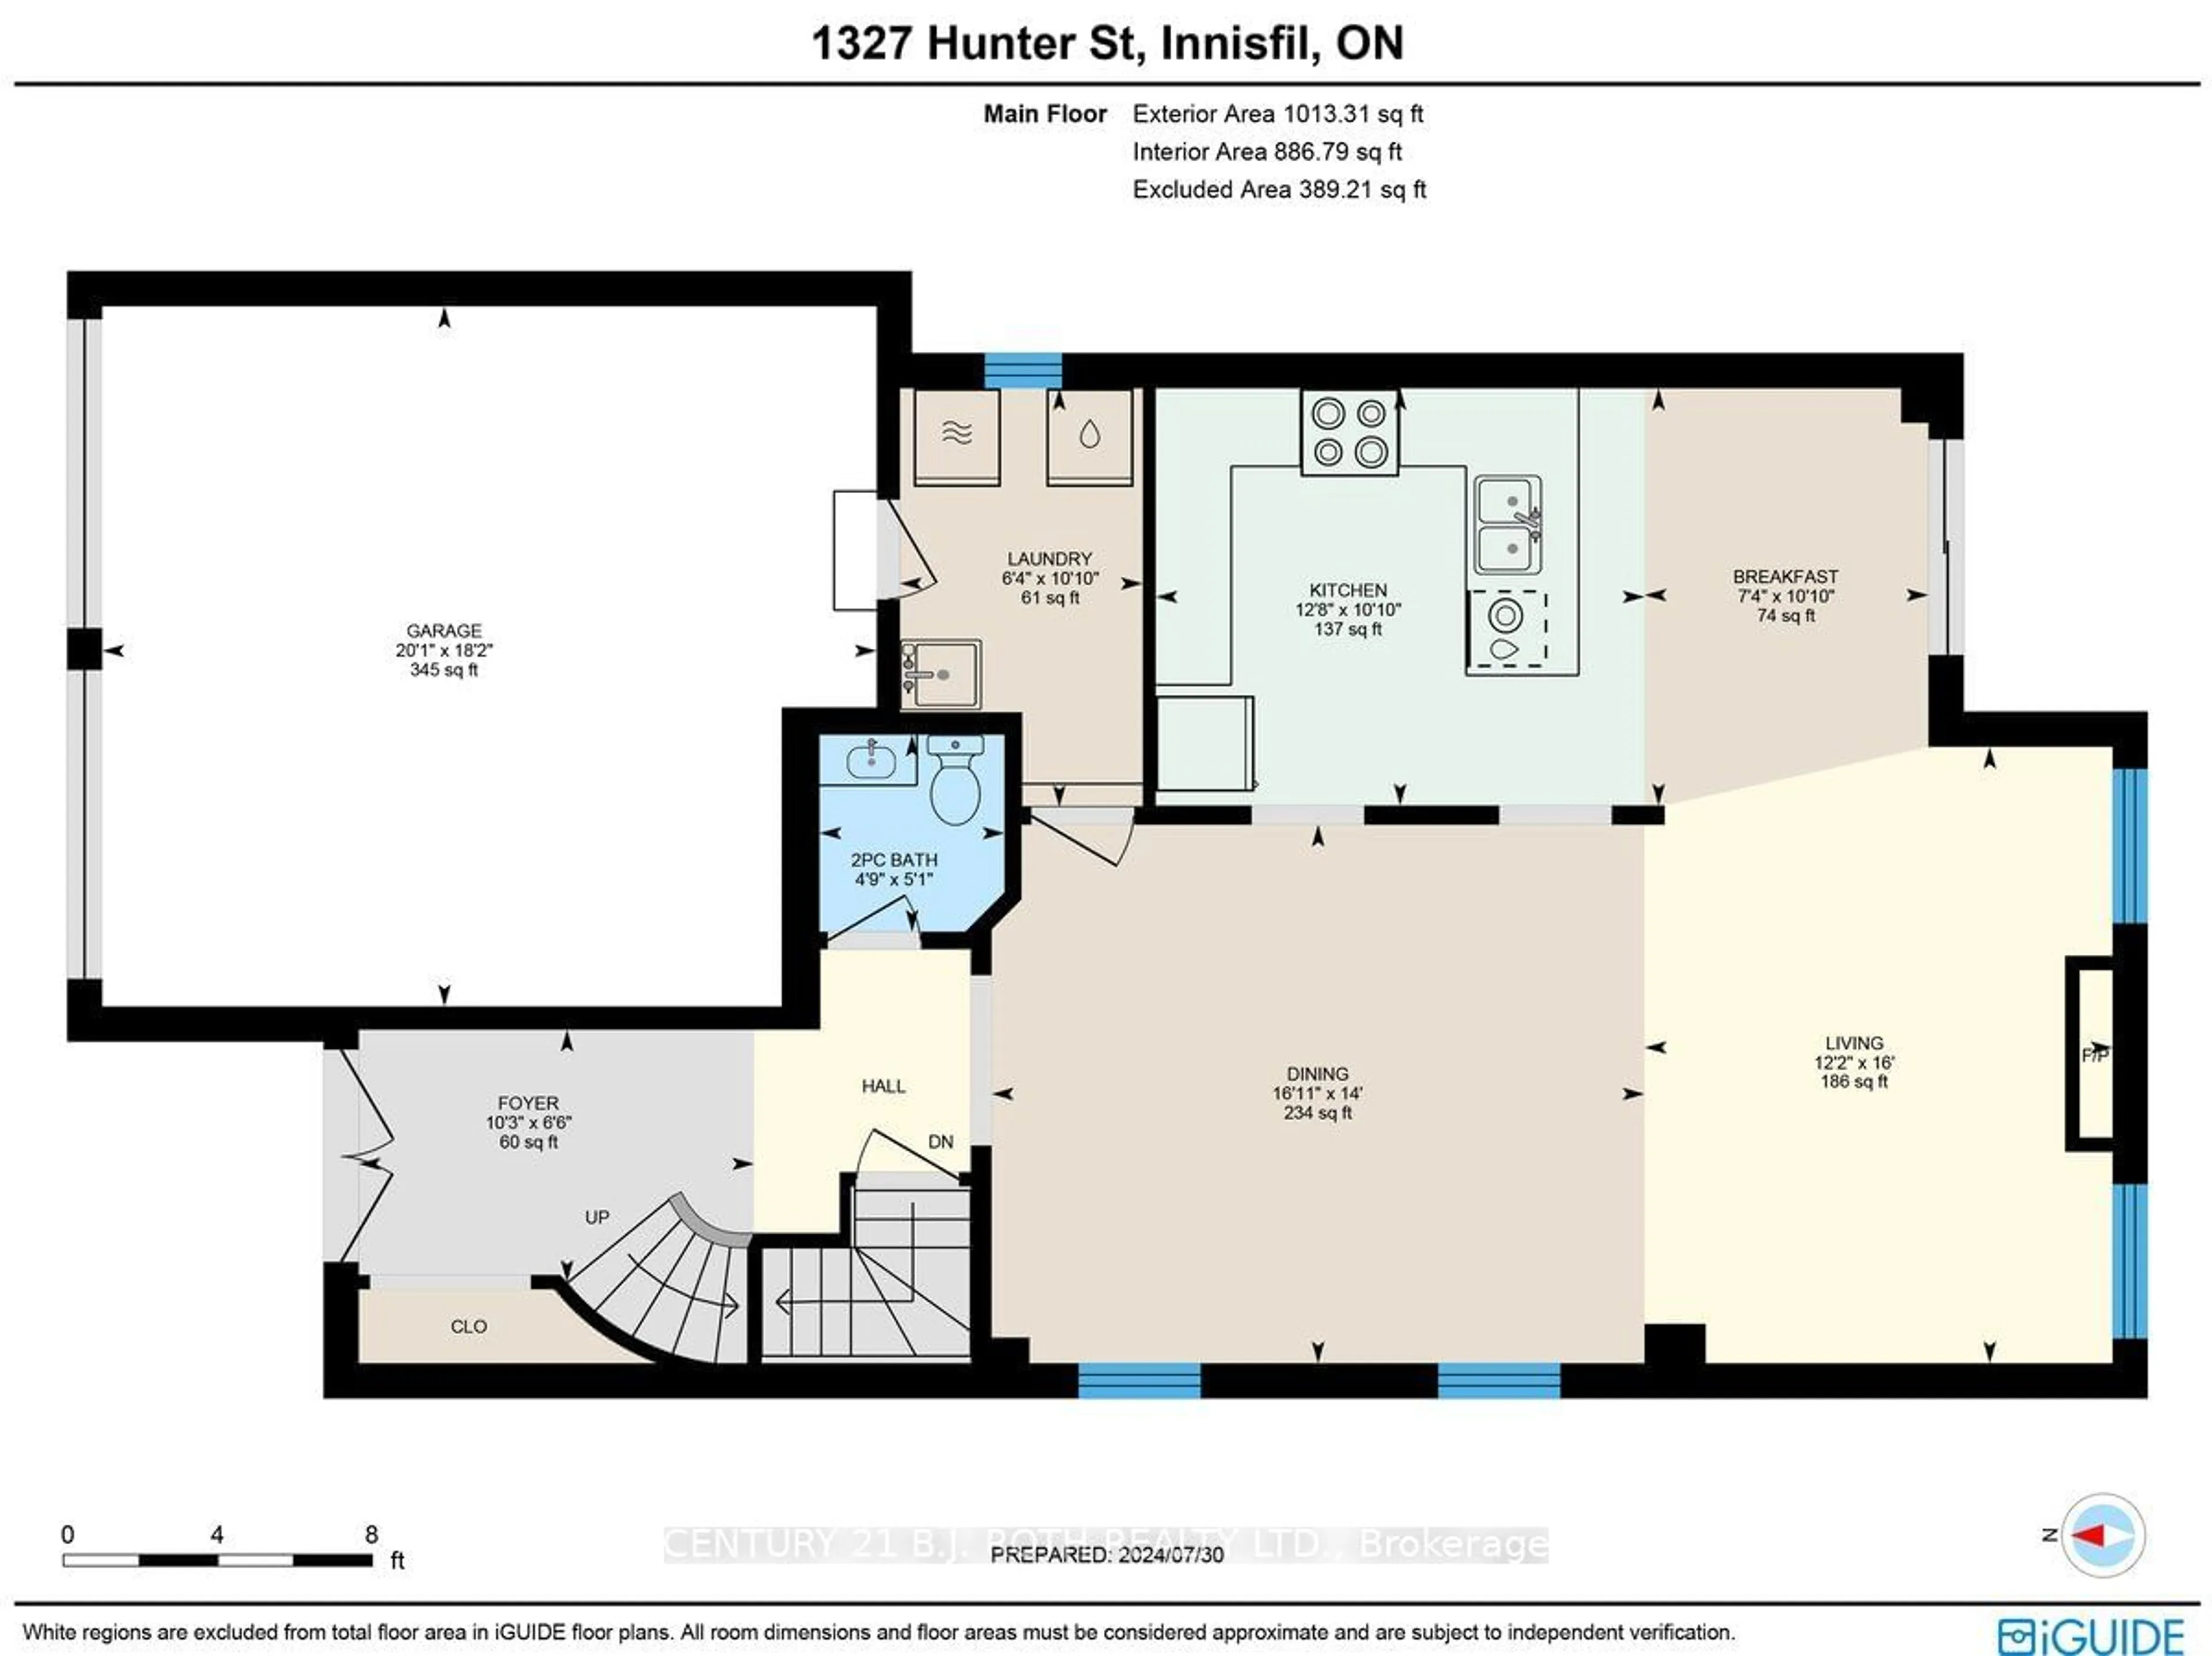 Floor plan for 1327 Hunter St, Innisfil Ontario L9S 0G8